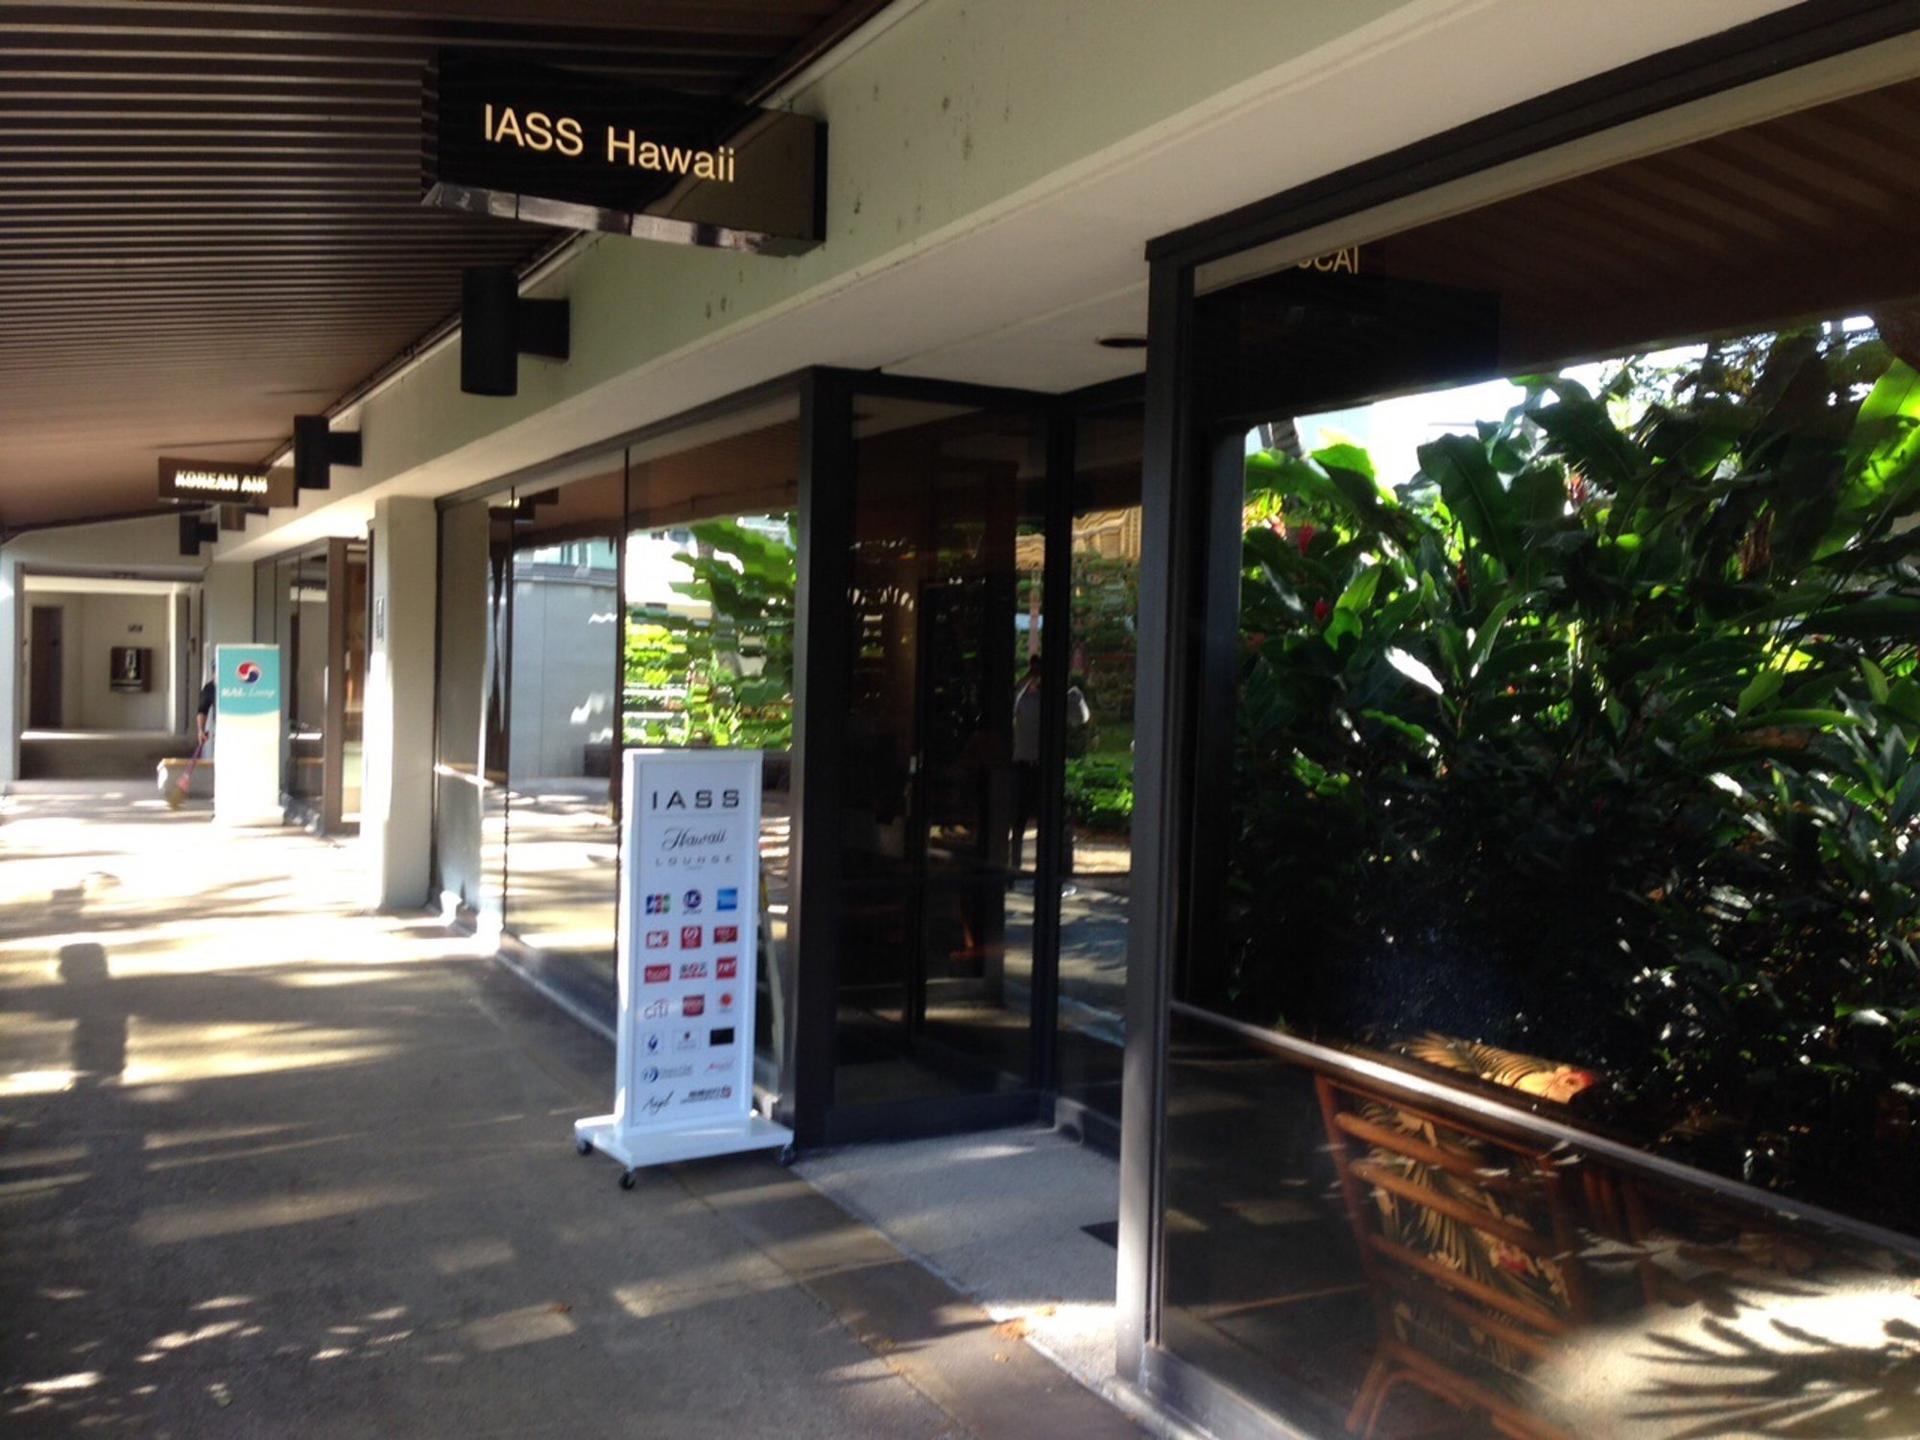 IASS Hawaii Lounge image 14 of 39